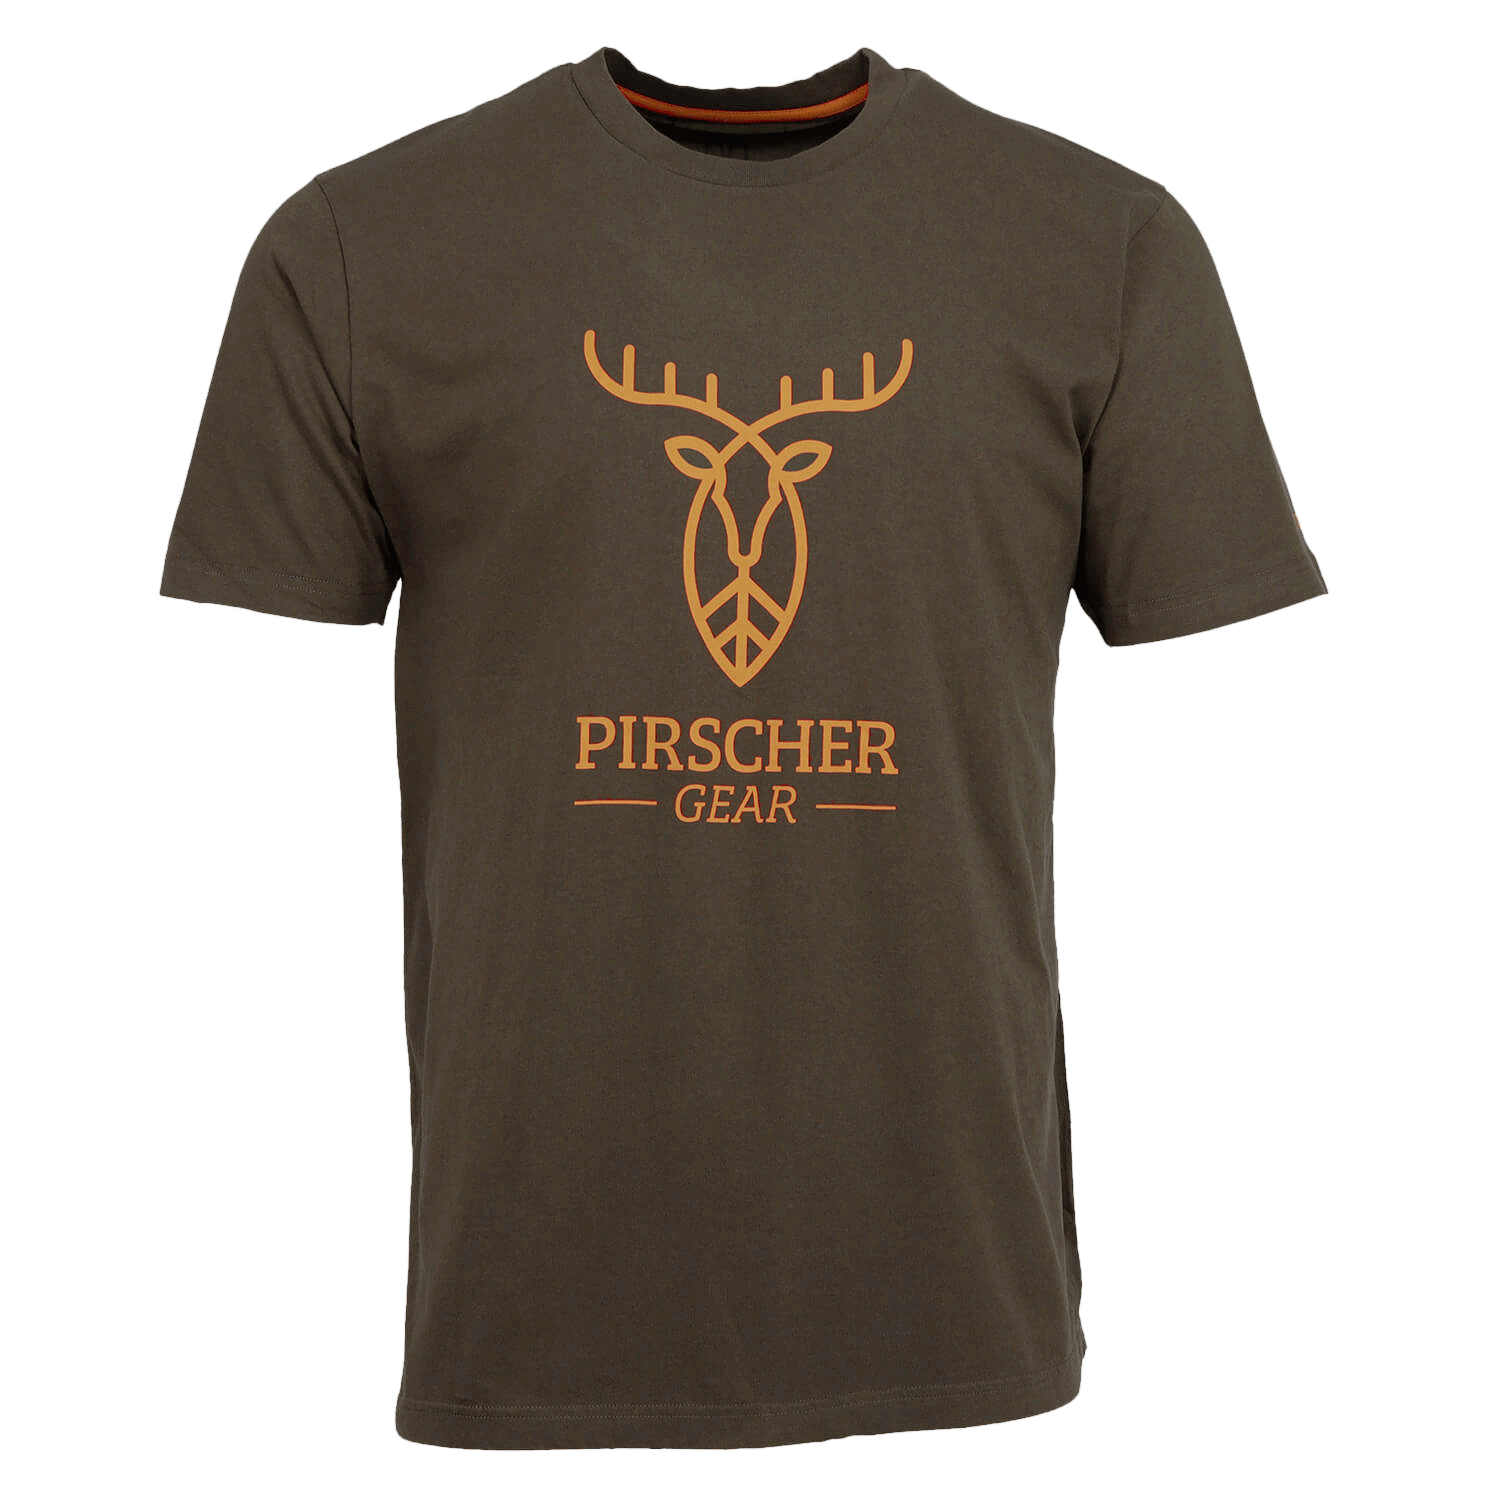 Pirscher Gear T-Shirt Full Logo (brown) - Gifts For Hunters